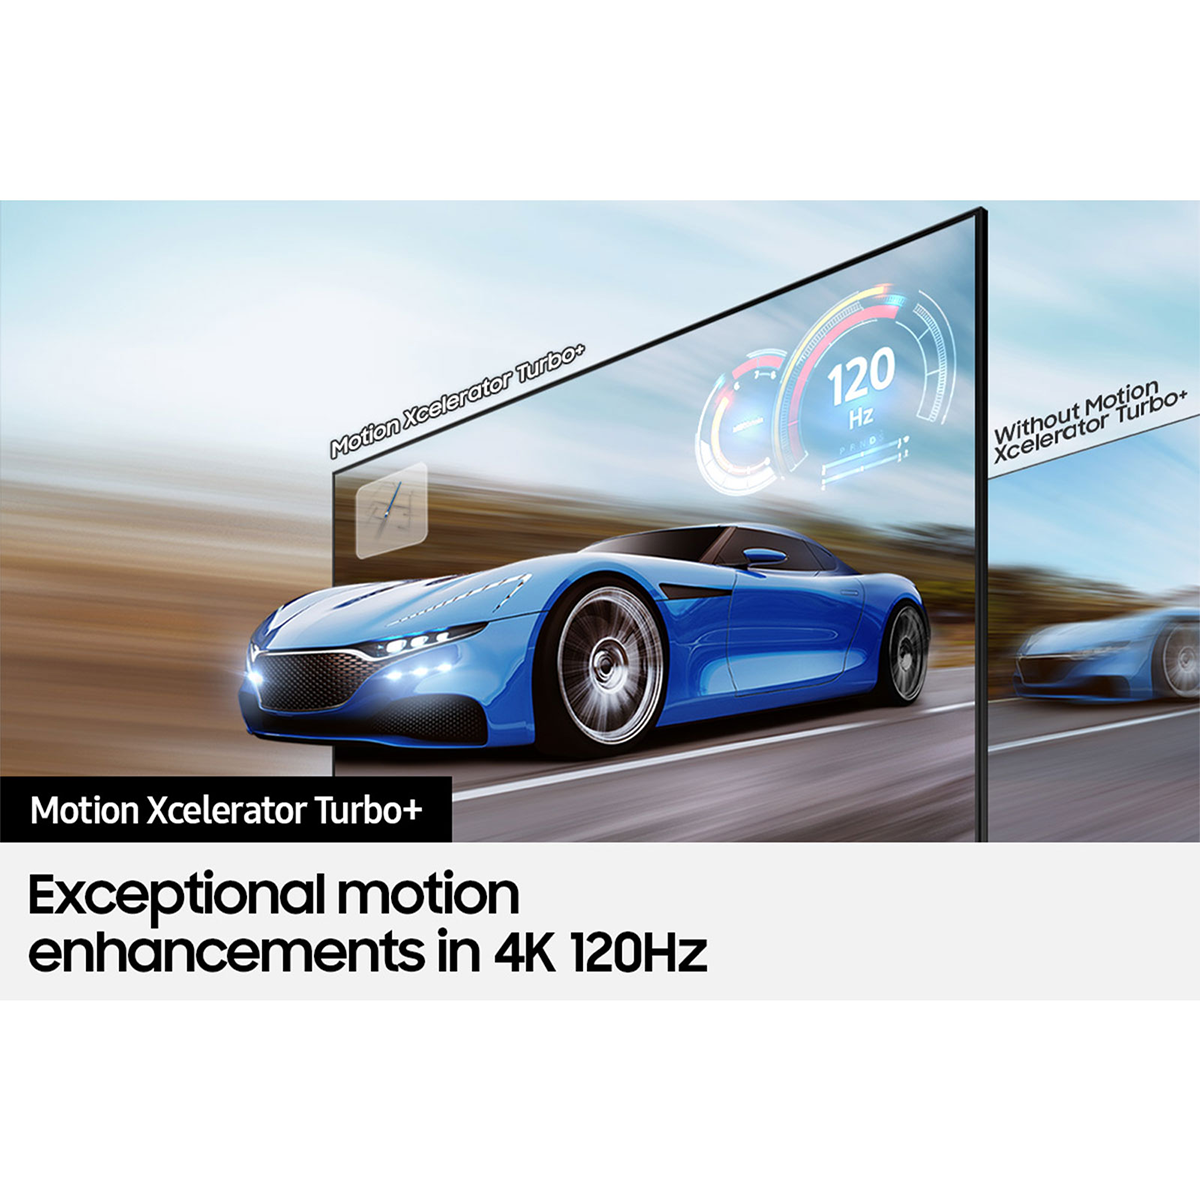 Samsung 55" Class Q70A QLED 4K Smart TV (2021)